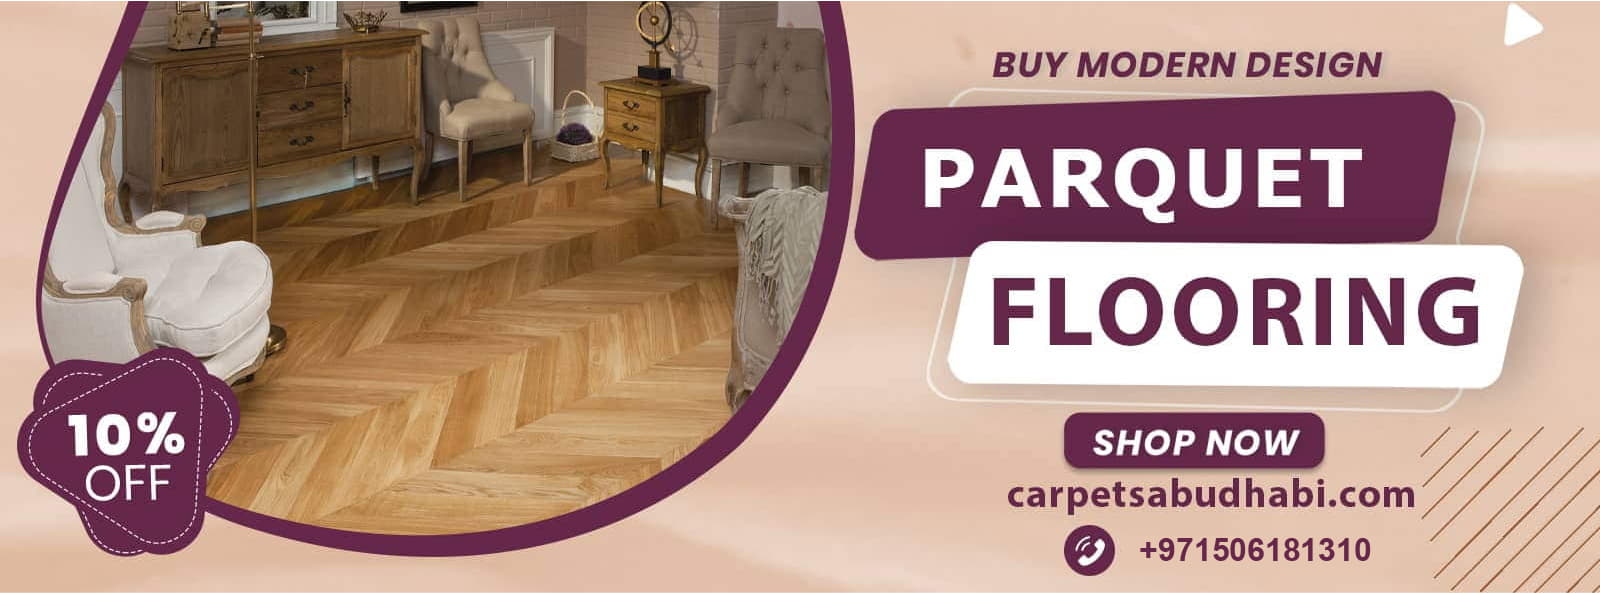 parquet flooring 1